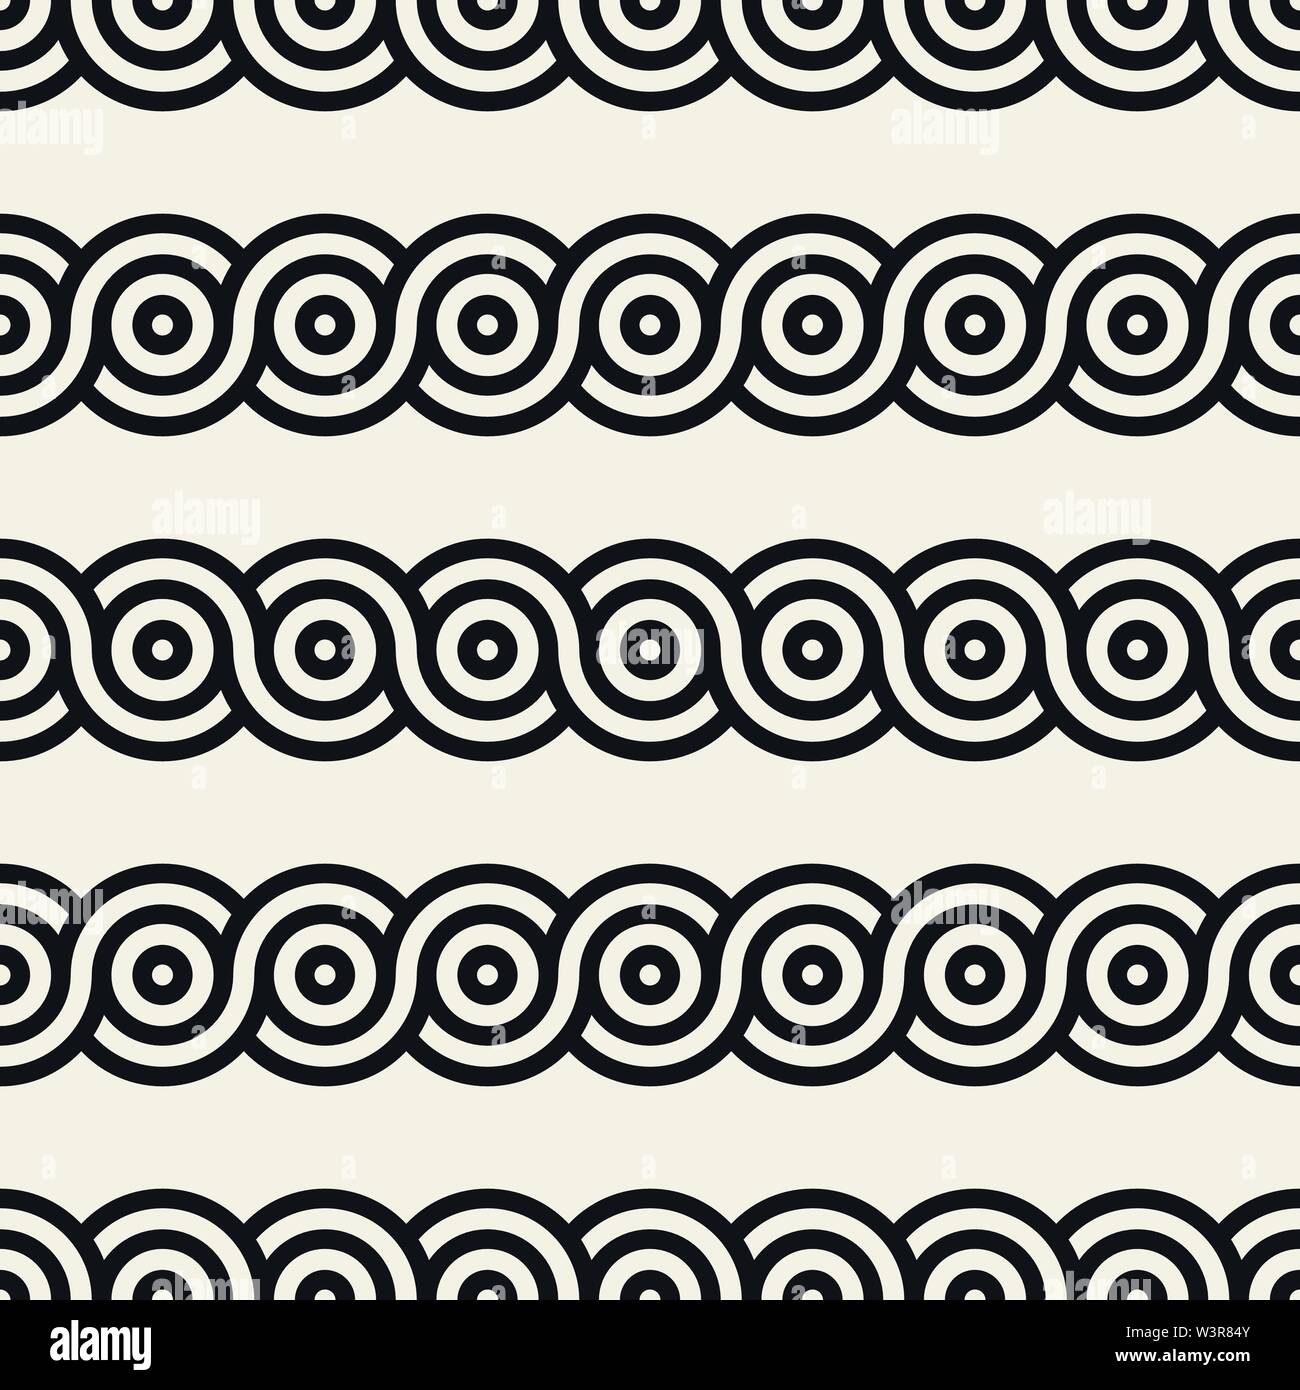 Vektor nahtlose interlacing Linien Muster. Modernes, stilvolles Abstrakt Hintergrund. Wiederkehrende geometrische Streifen Design. Stock Vektor